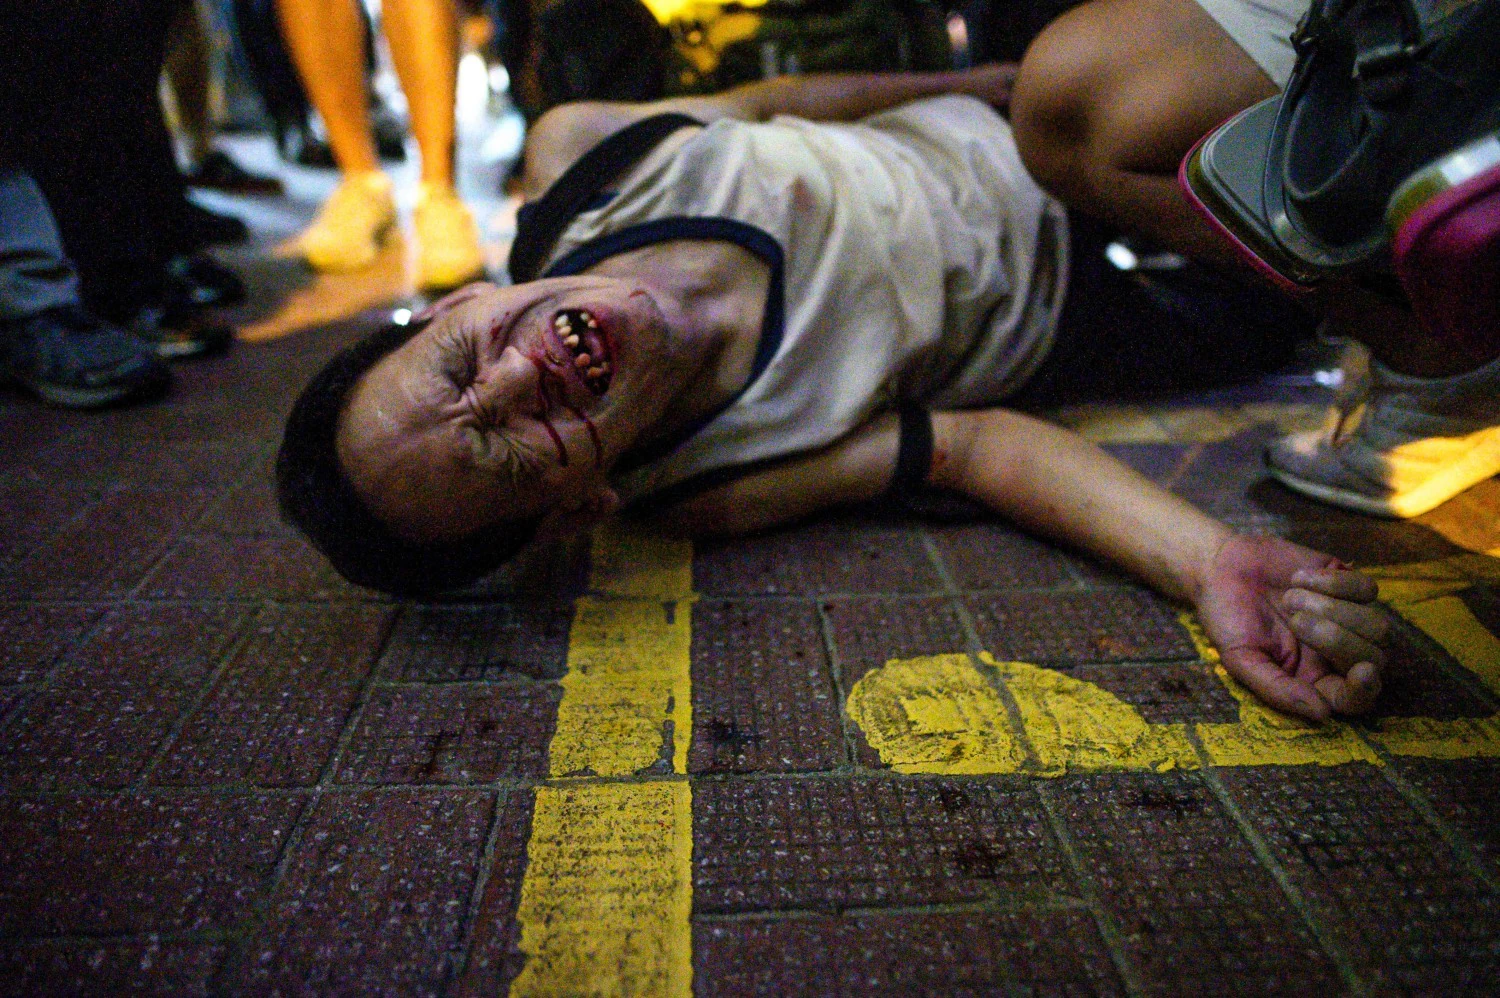 Un hombre no identificado reacciona después de ser golpeado por un grupo de personas después de una protesta en el distrito de Causeway Bay en Hong Kong .La policía antidisturbios de Hong Kong disparó gases lacrimógenos y cañones de agua contra manifestantes pro-democracia que arrojaban piedras y bombas de gasolina, volviendo la ciudad plagada de violencia al caos después de una breve pausa en los enfrentamientos. 